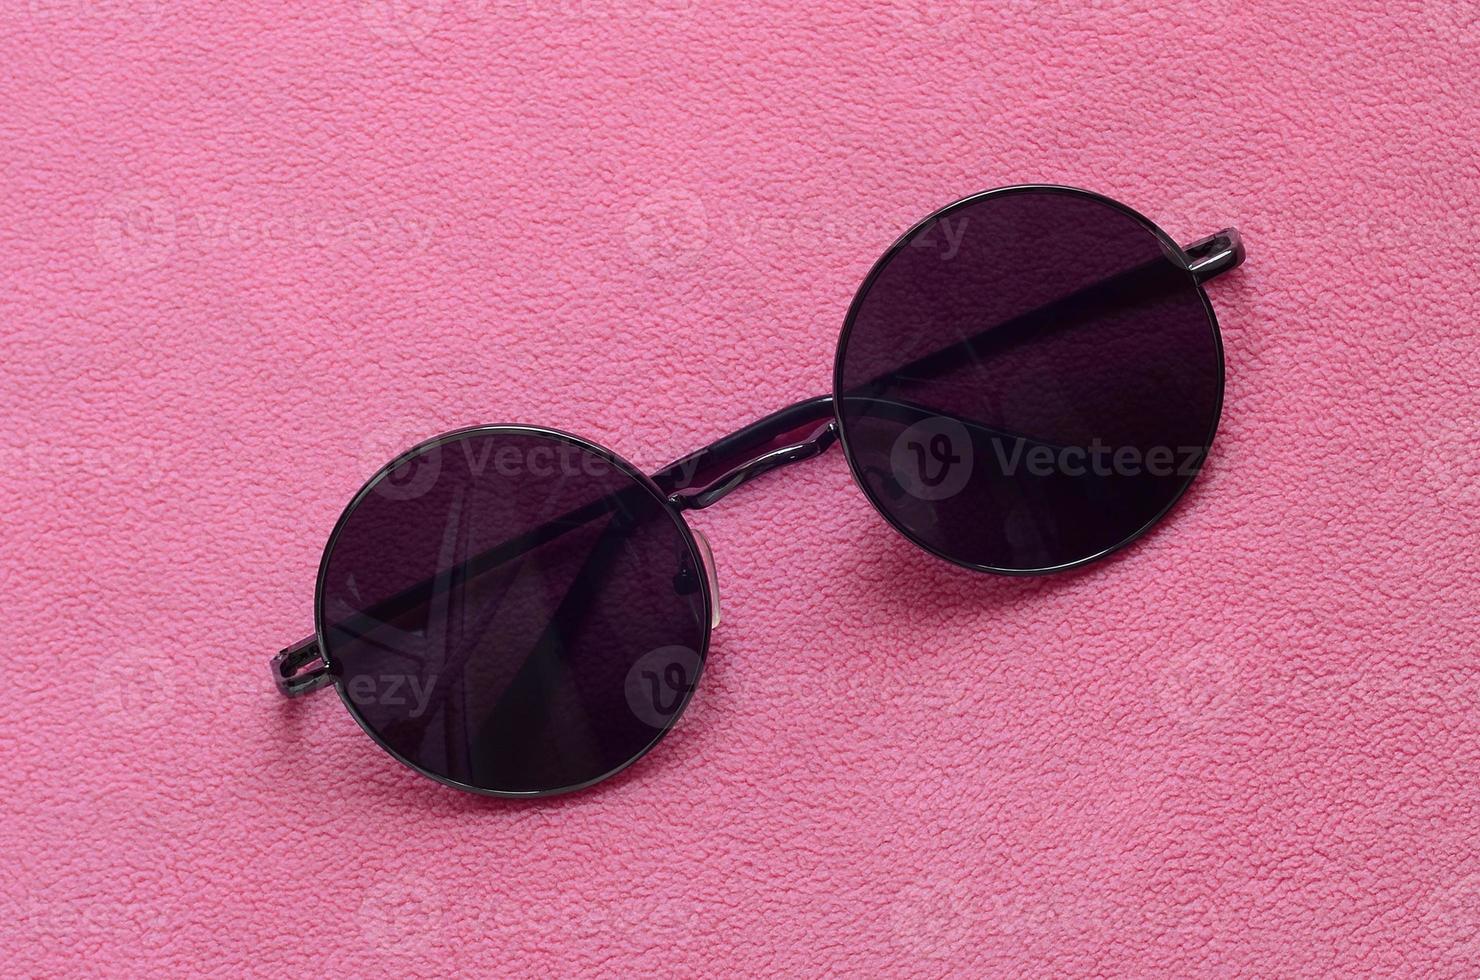 elegantes óculos de sol pretos com óculos redondos encontram-se em um cobertor feito de tecido de lã rosa claro macio e fofo. imagem de fundo elegante em cores femininas foto